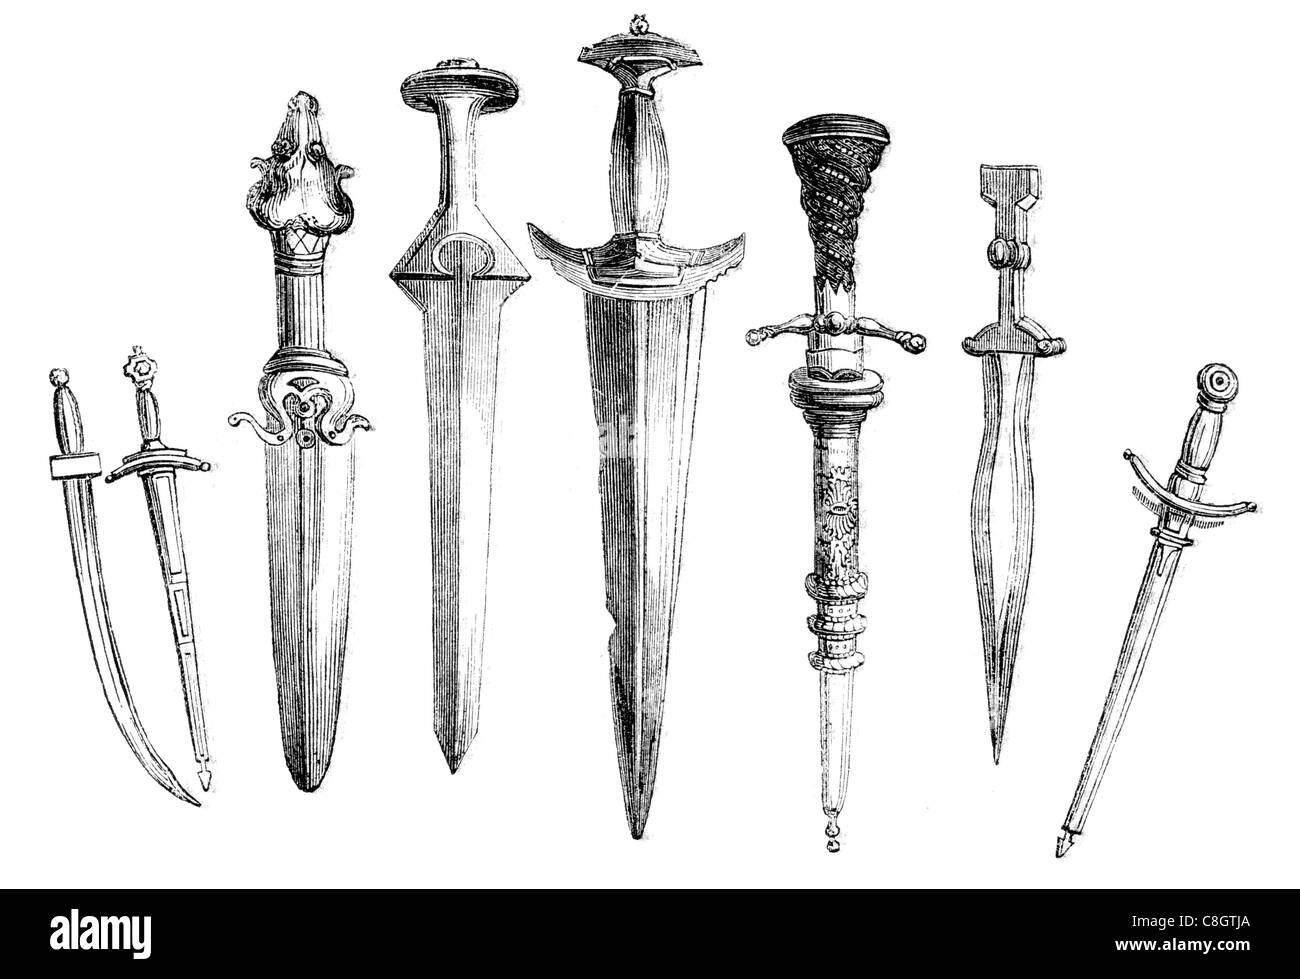 Espada de corte de competición de Cold Steel ⚔️ Tienda-Medieval